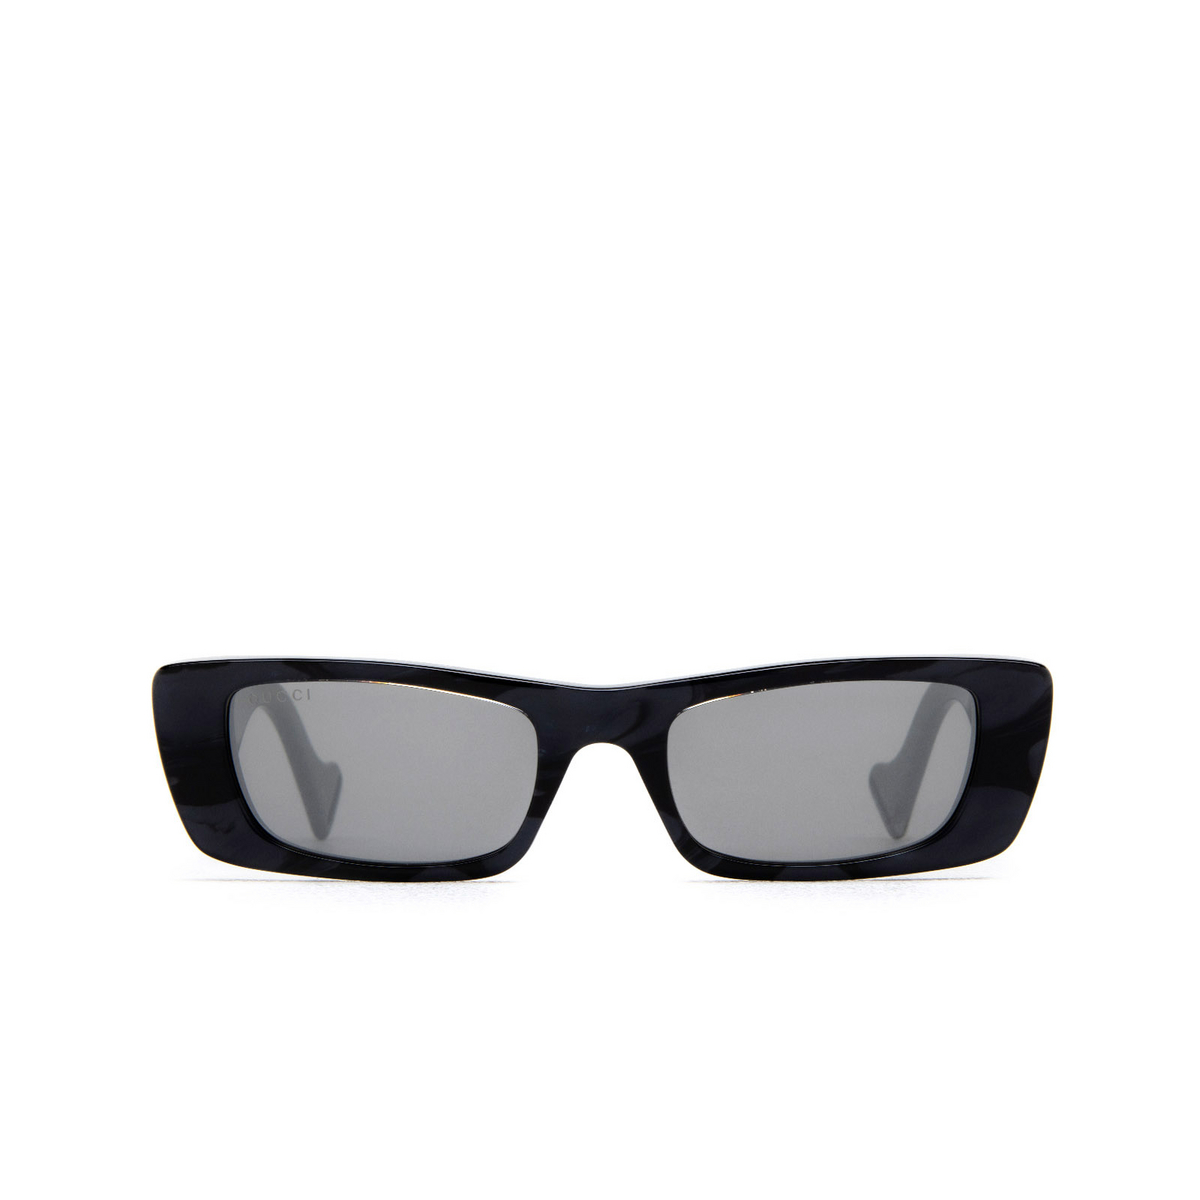 Gucci sunglasses GG0516S 014